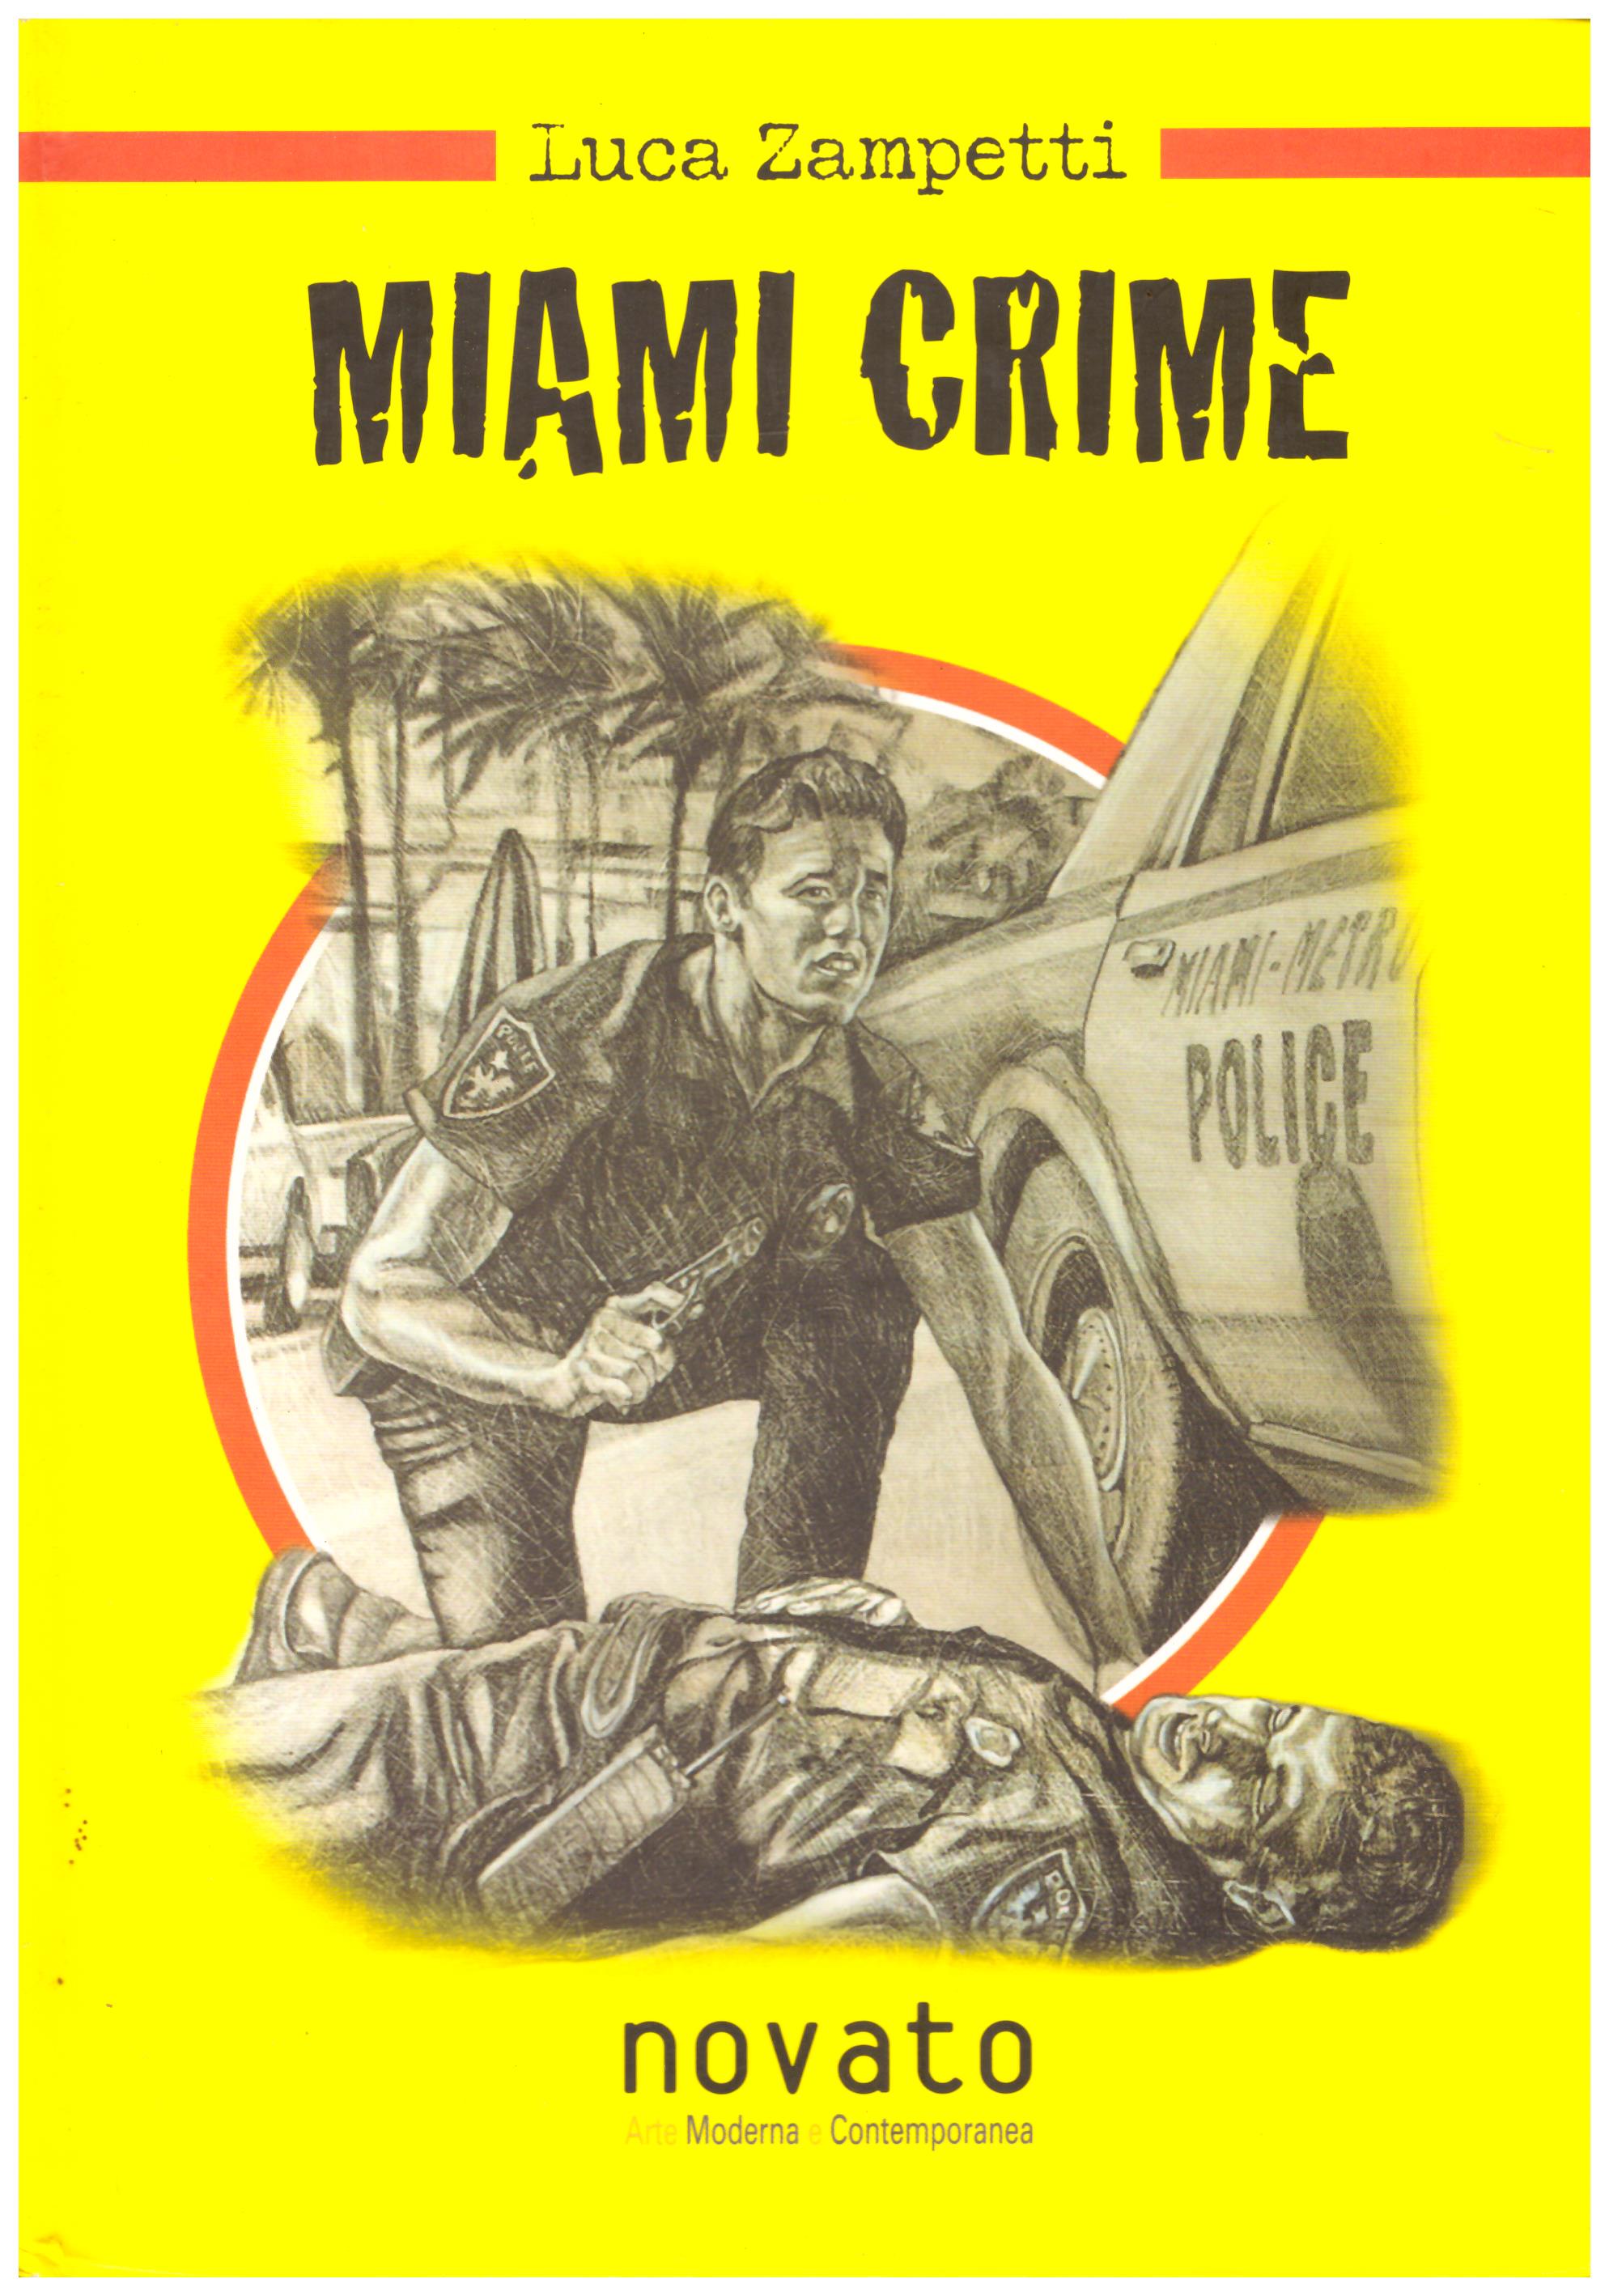 Titolo: Miami crime Autore: Luca Zampetti Editore: novato, 2005